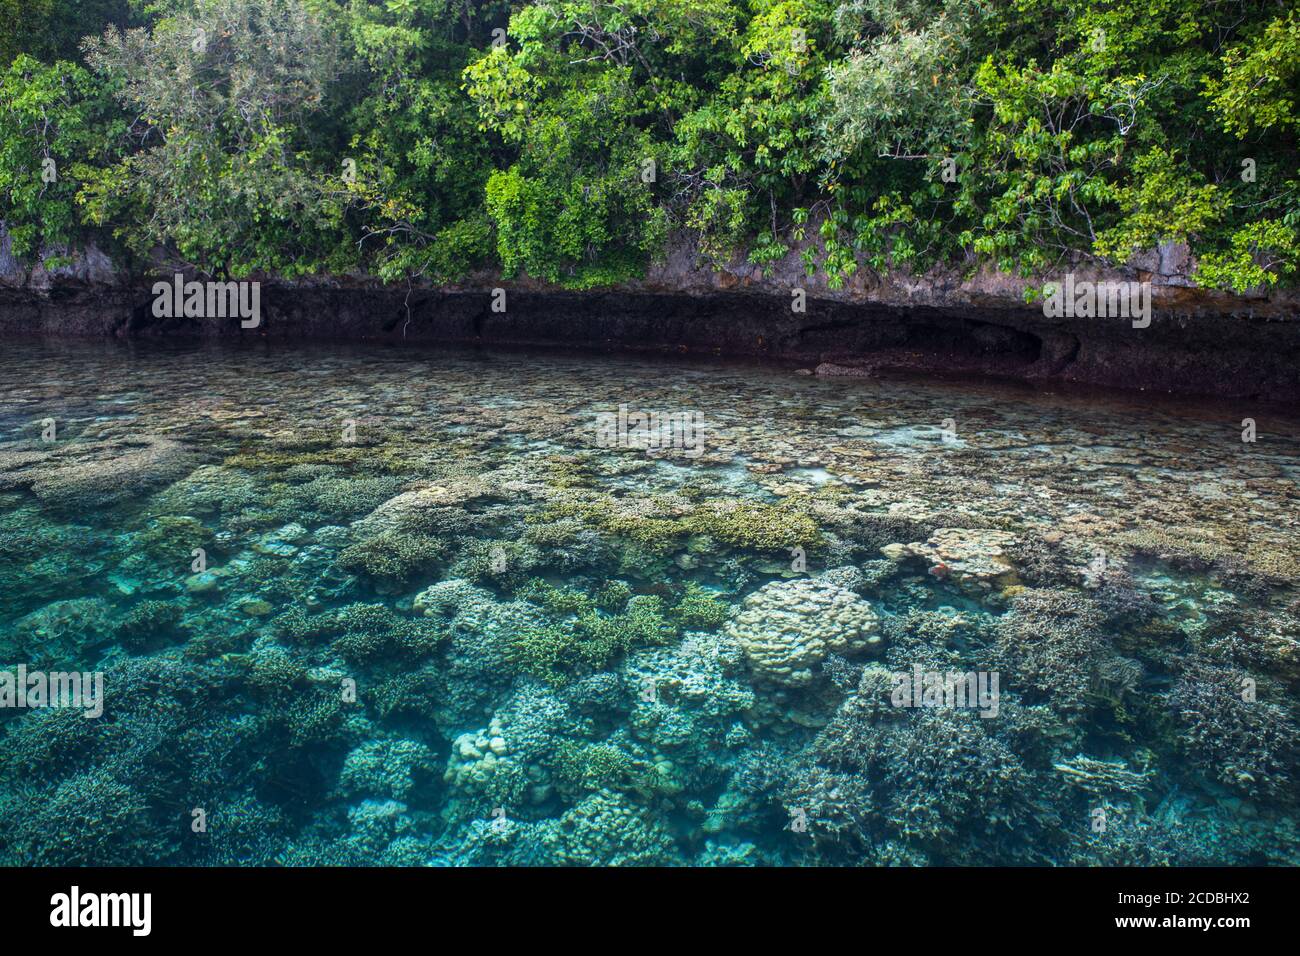 Gesunde Korallen gedeihen in den Untiefen am Rande einer Kalksteininsel in der Lagune von Palau. Palau ist bekannt für sein erstaunliches Labyrinth von Felseninseln. Stockfoto